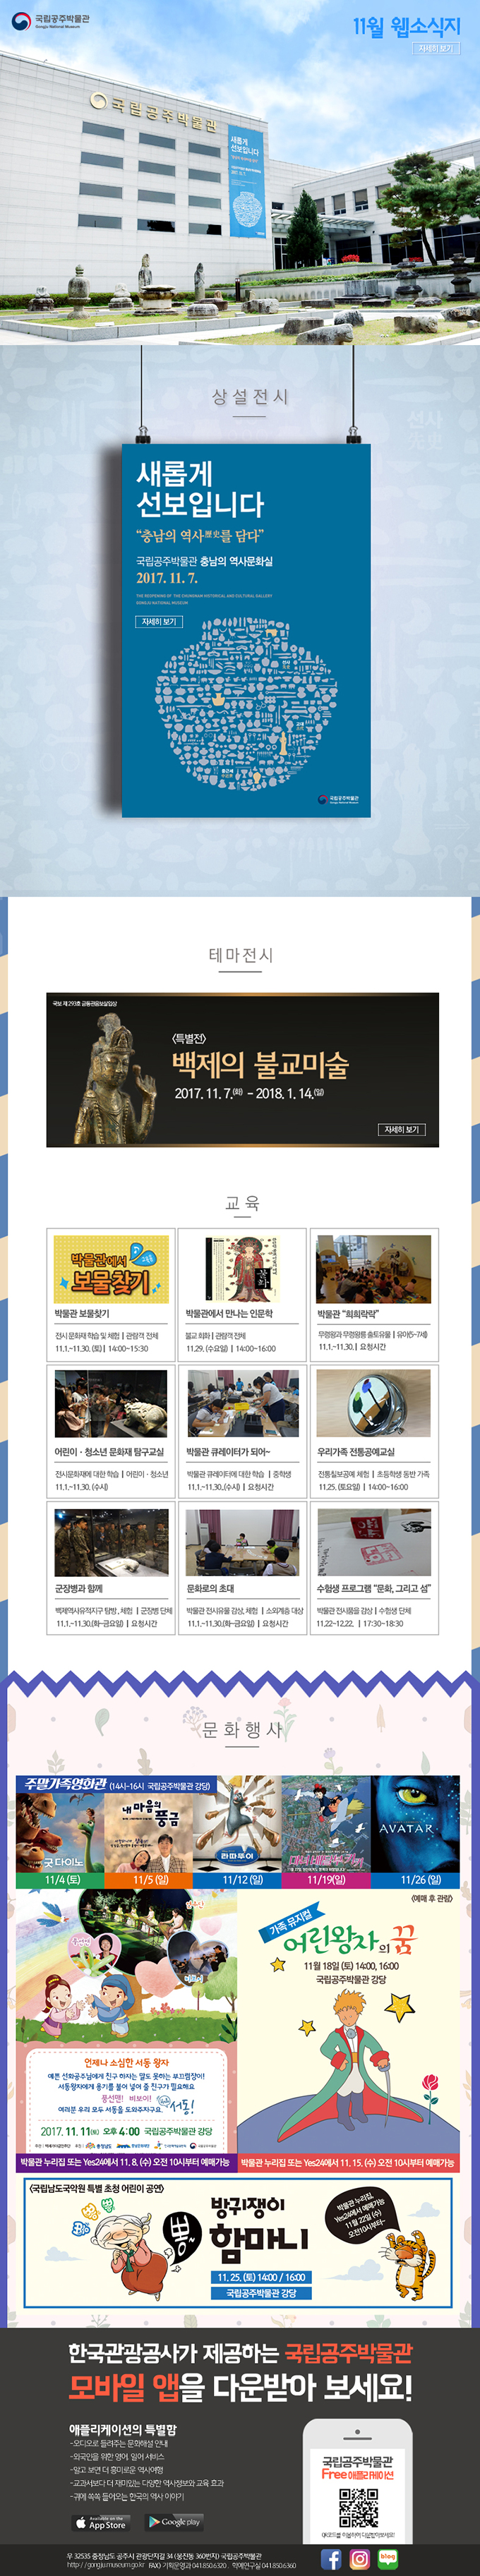 국립공주박물관 웹소식지 2017년 11월 대표이미지